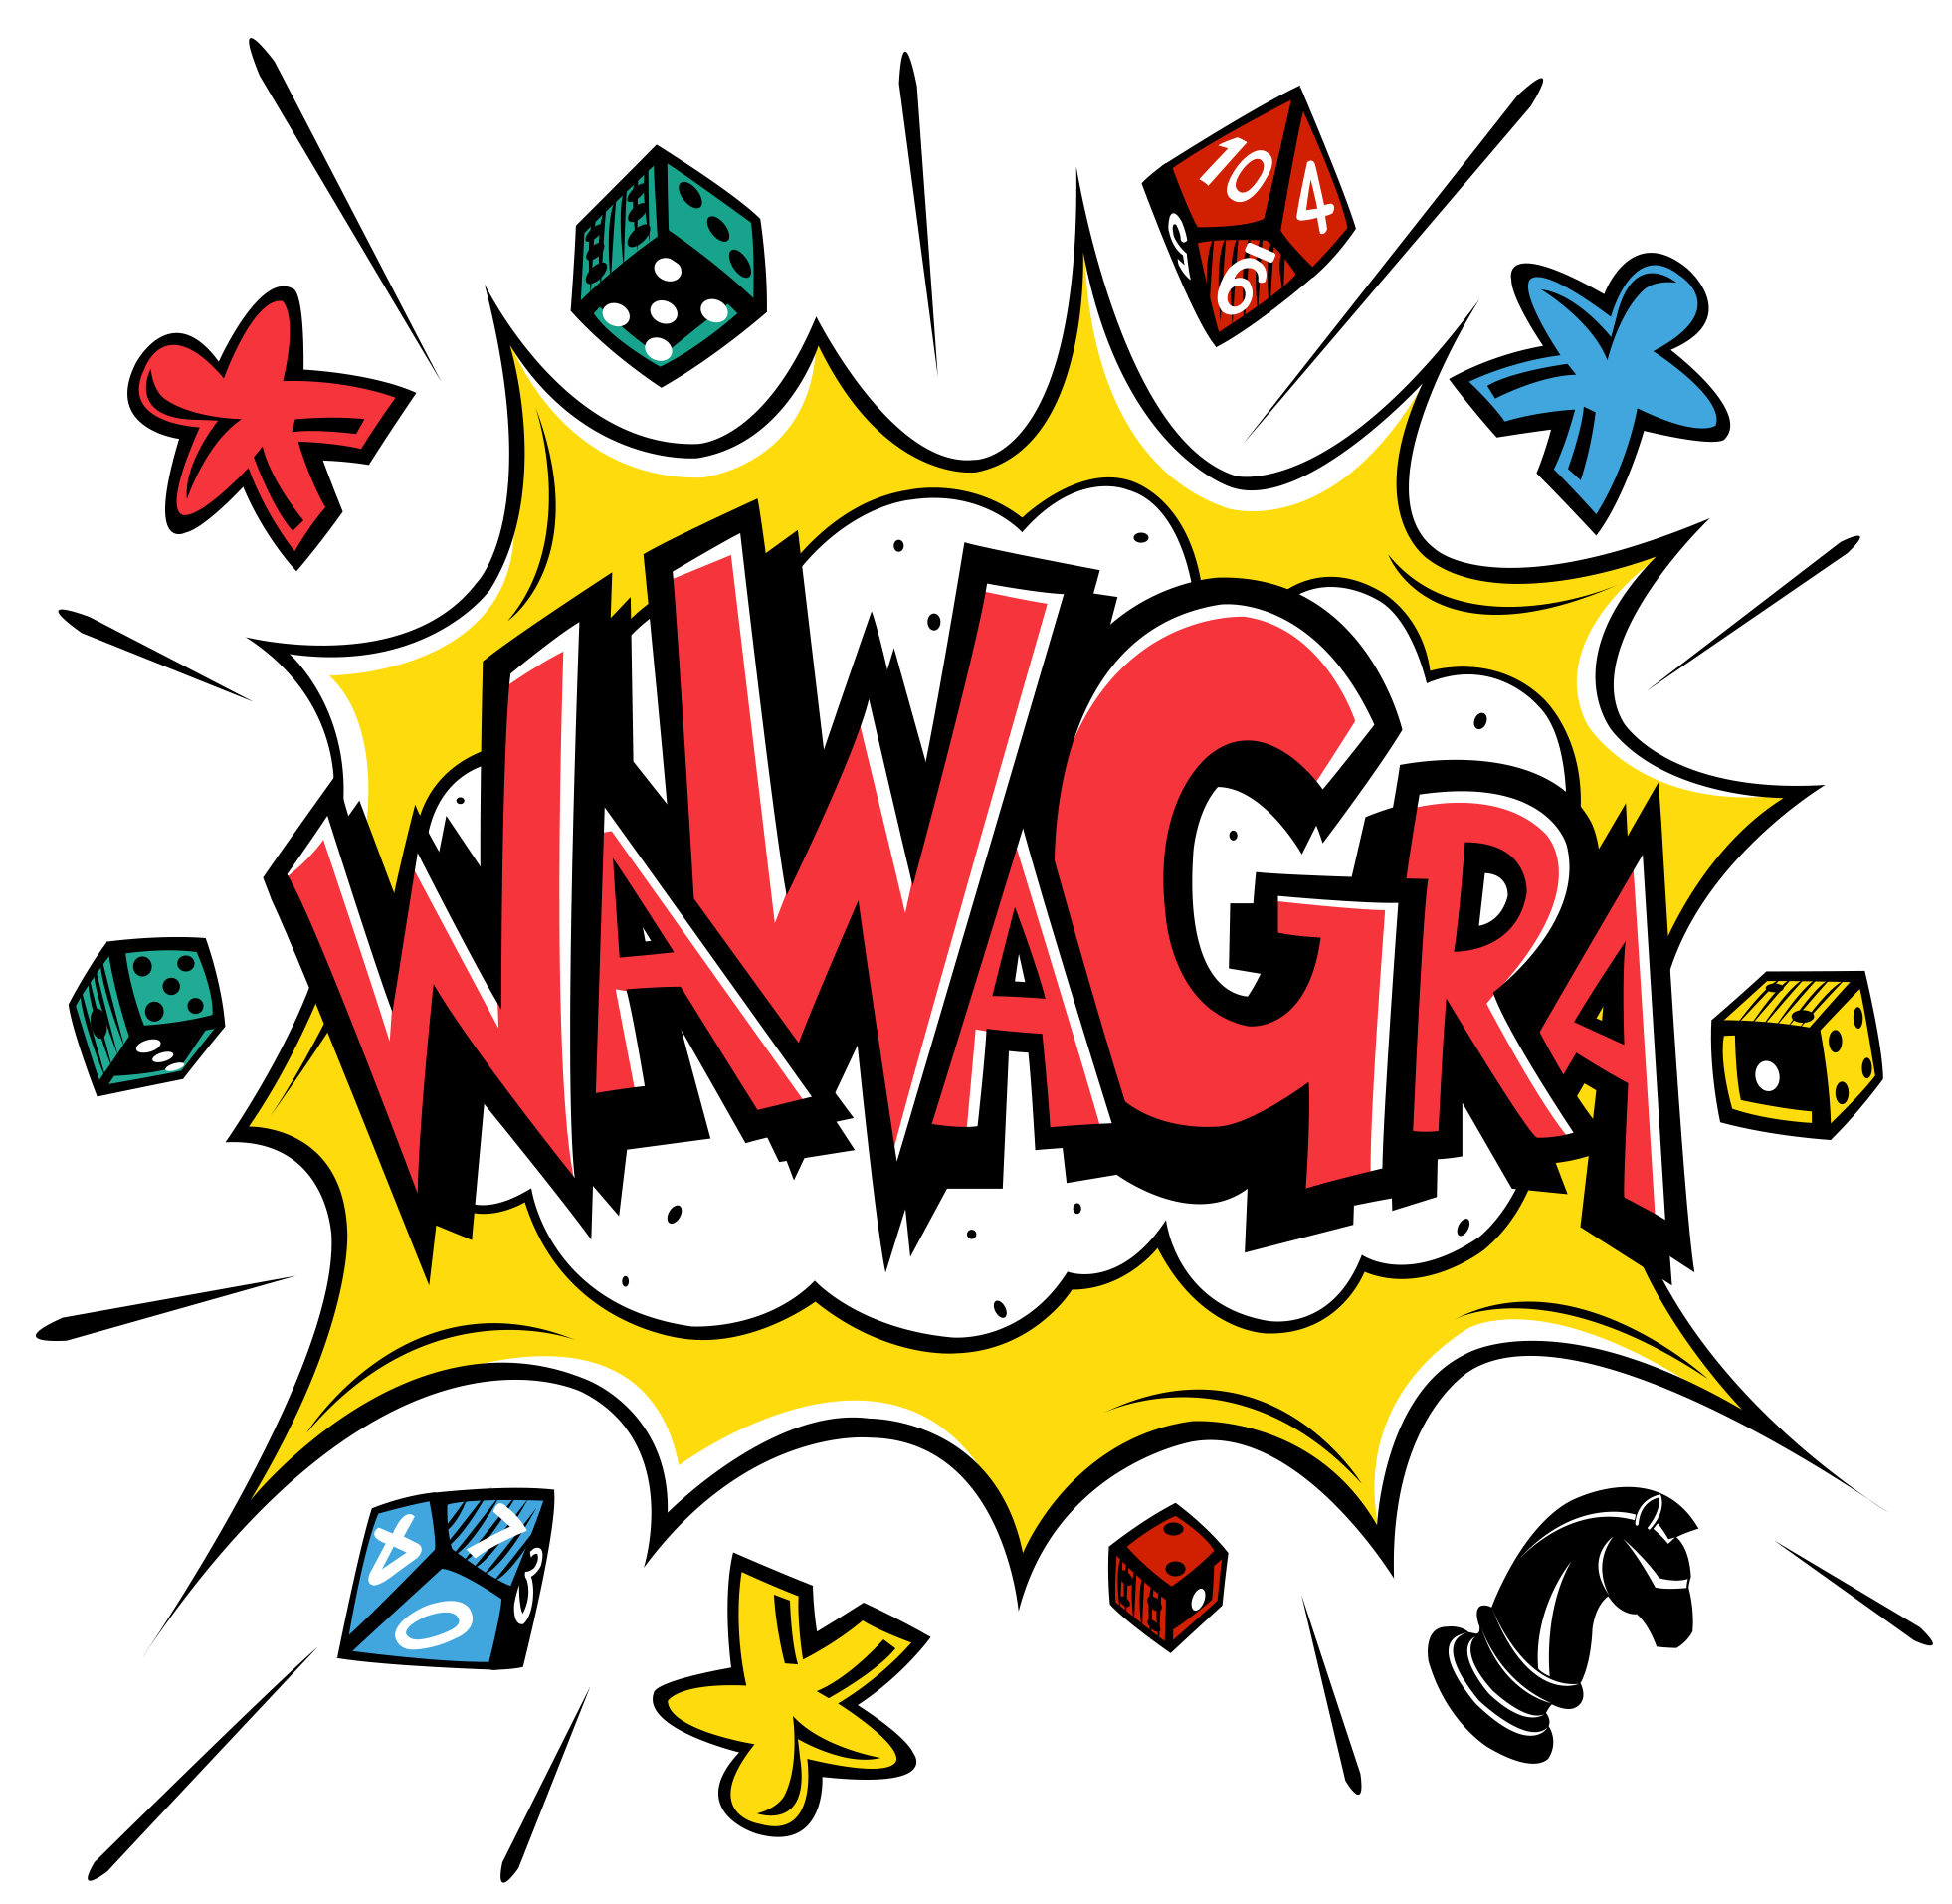 Logo wydarzenia WawaGra